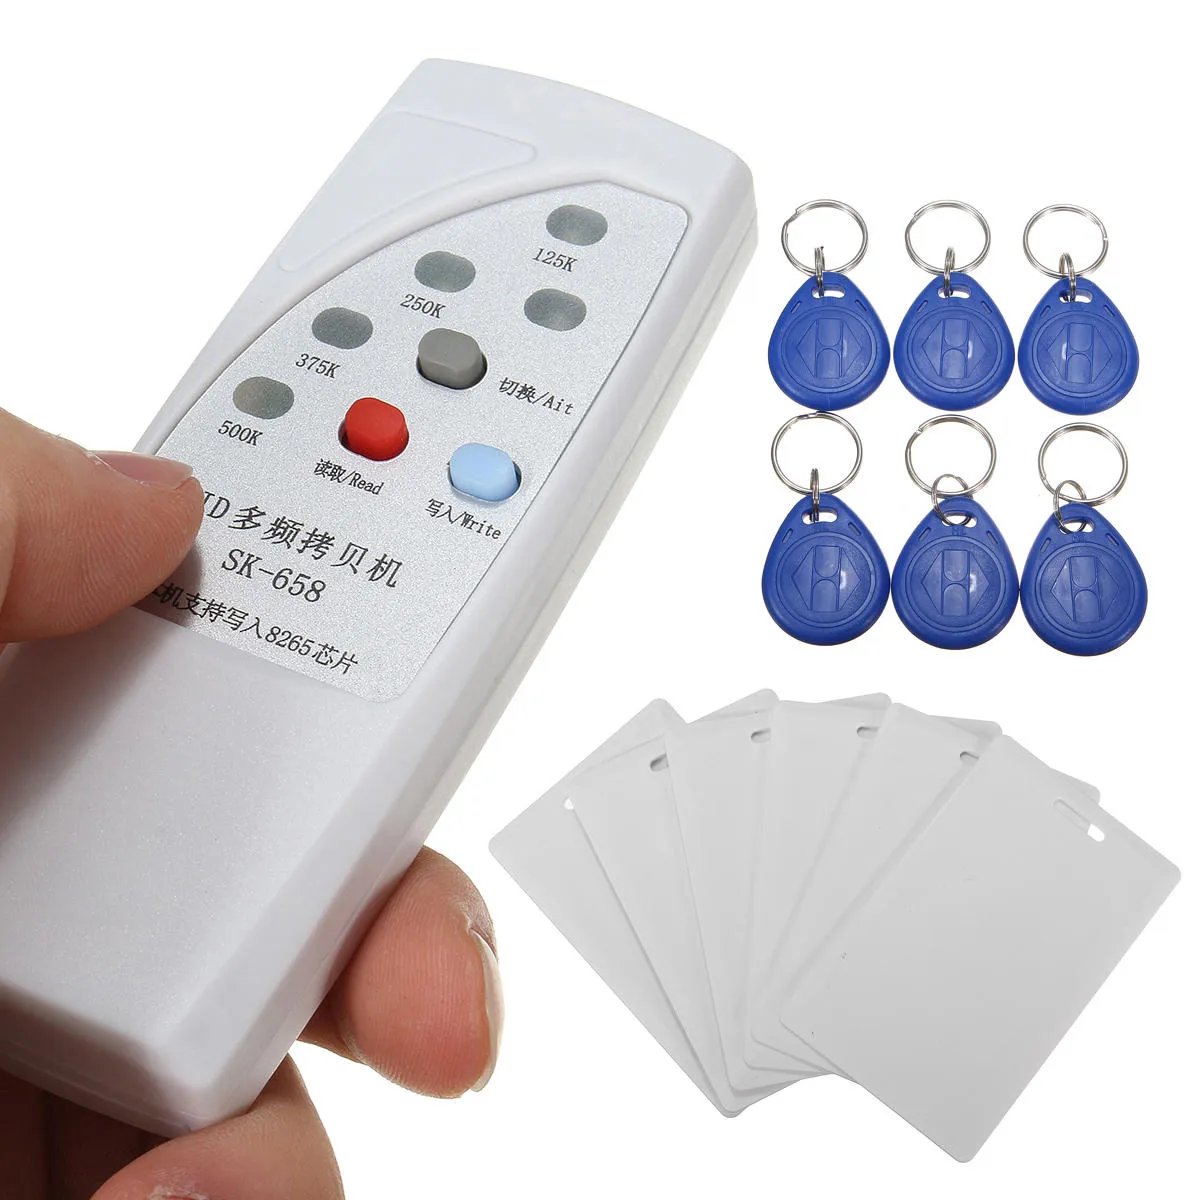 Daniu SK-658 13PCS 125kHz RFID ID-kortläsare Writer Copier Duplicator med 6 Cardstags Kit